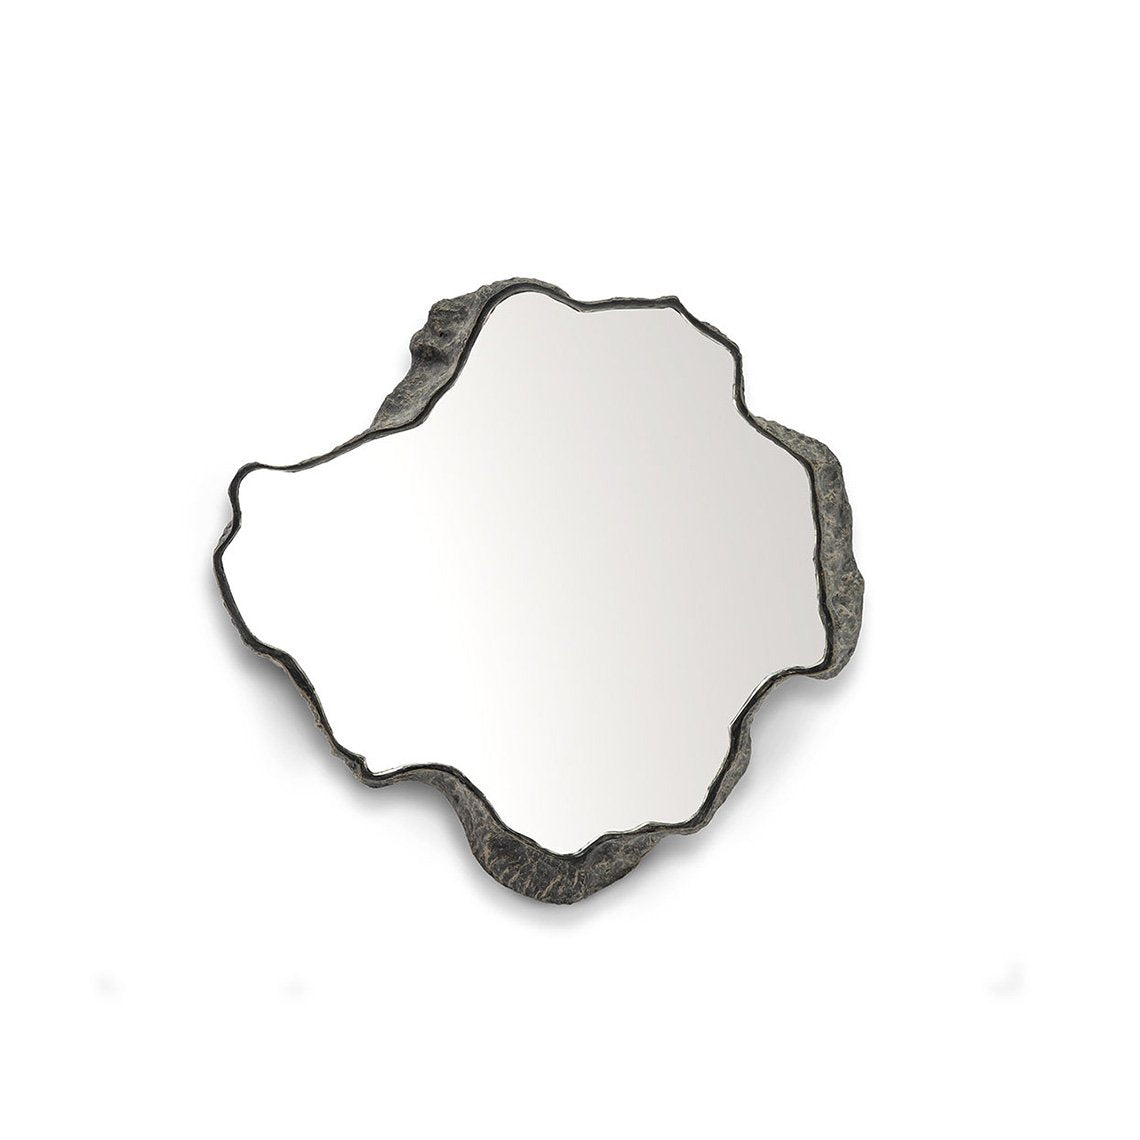 Caldera Mirror Small